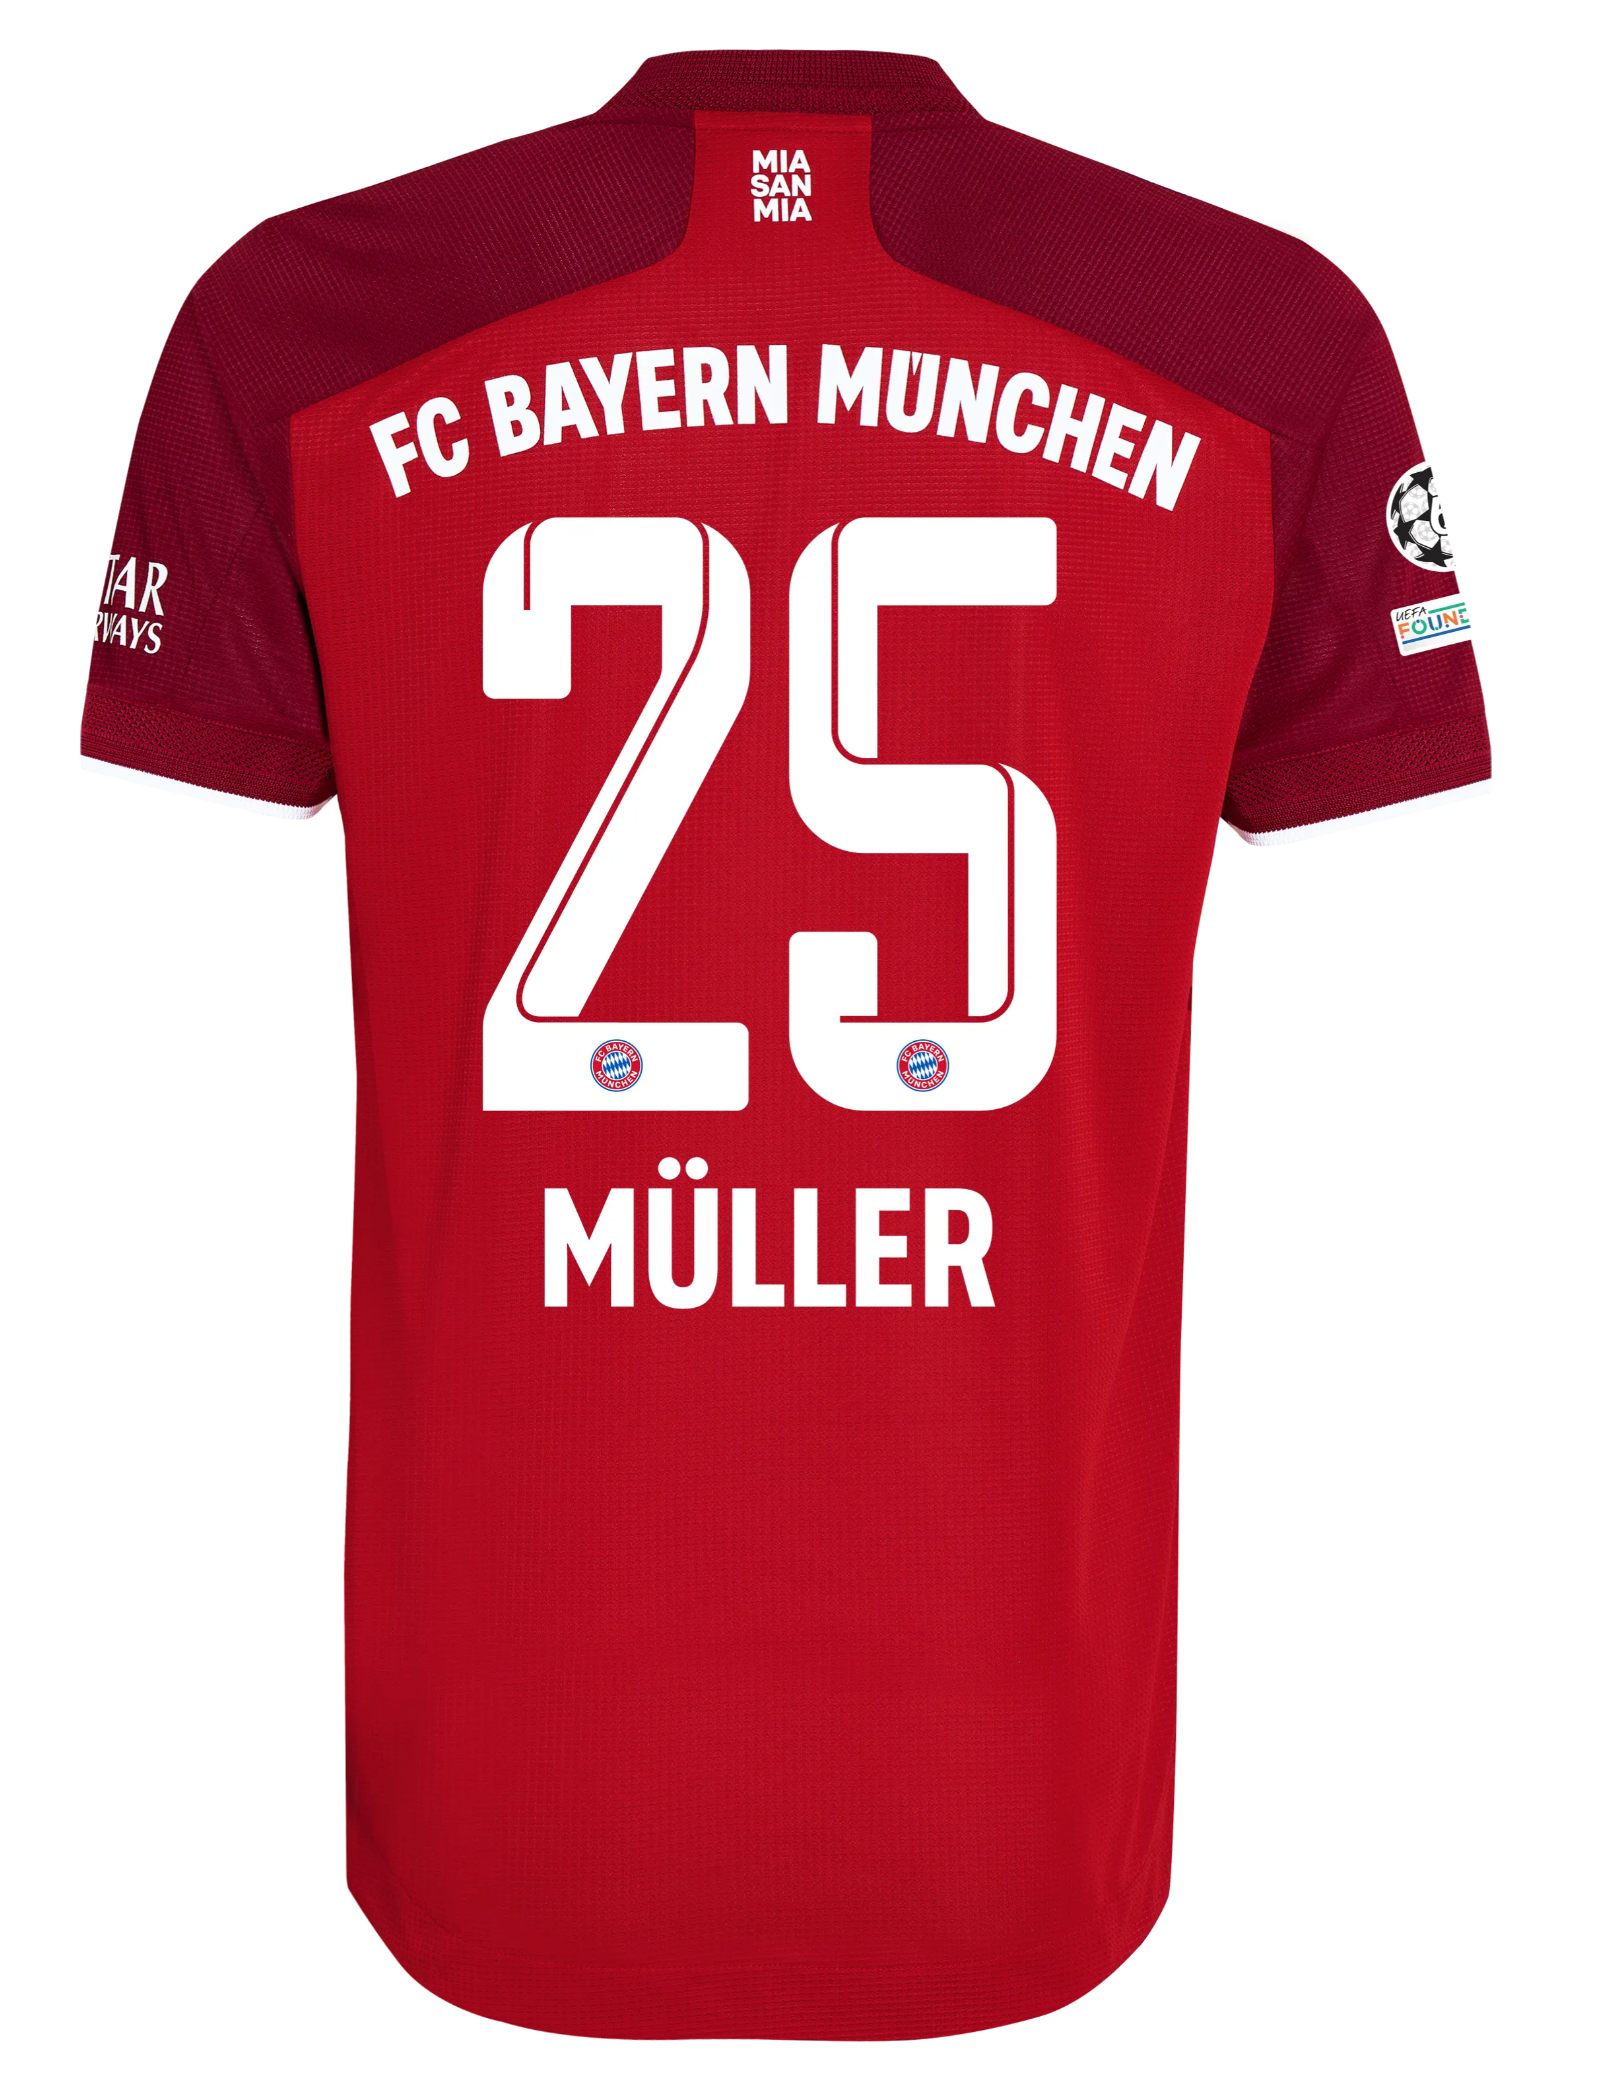 Bayern Munich Jersey, Bayern Munich Apparel